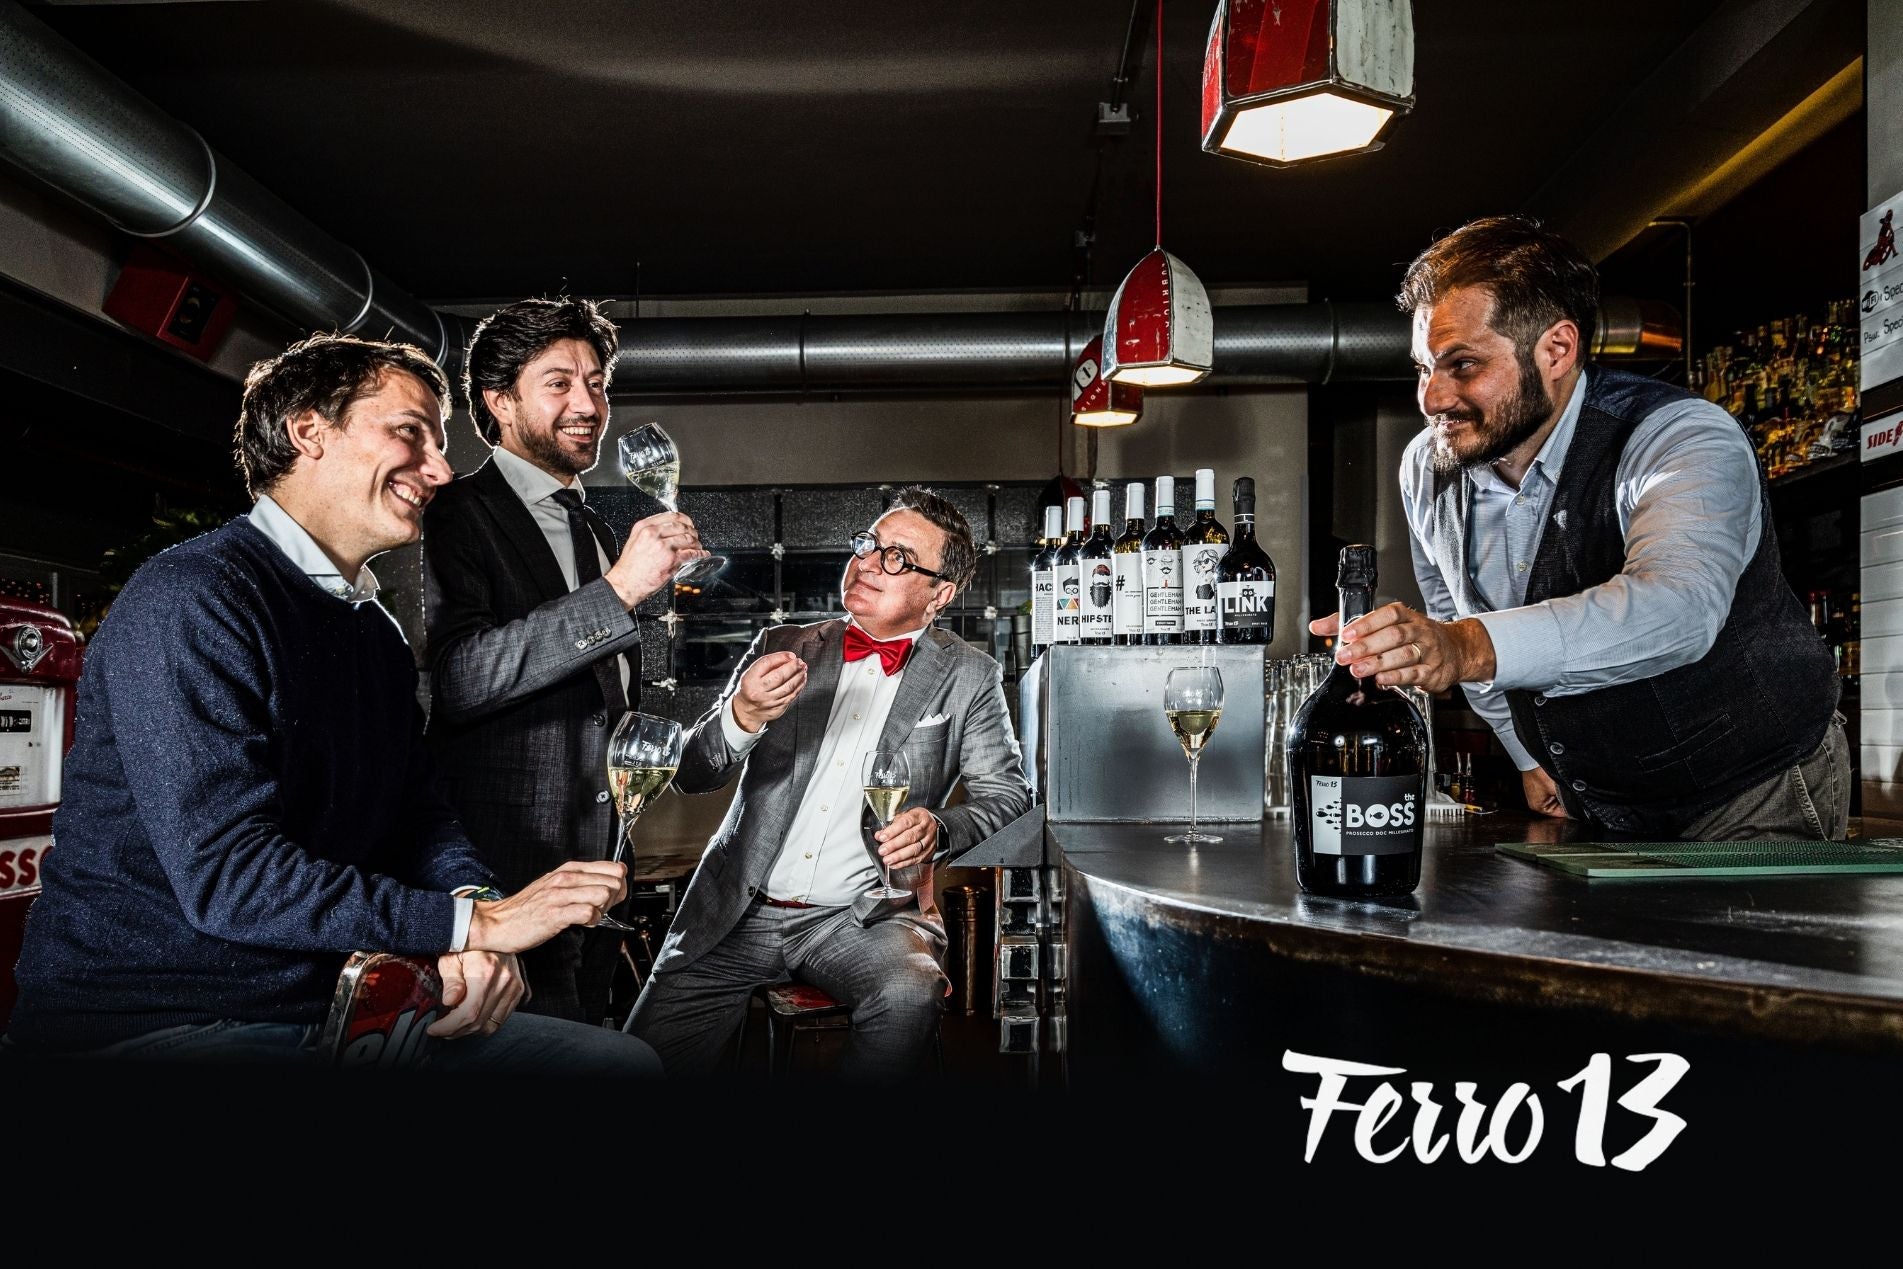 Ferro13 Rotewein und Weisswein aus Italien. The Lady, Hipster, Hacker, Hashtag oder Gentlemen. The Frame The Weekender Weingeschenk Leckere Weine online kaufen auf Vinmio.com